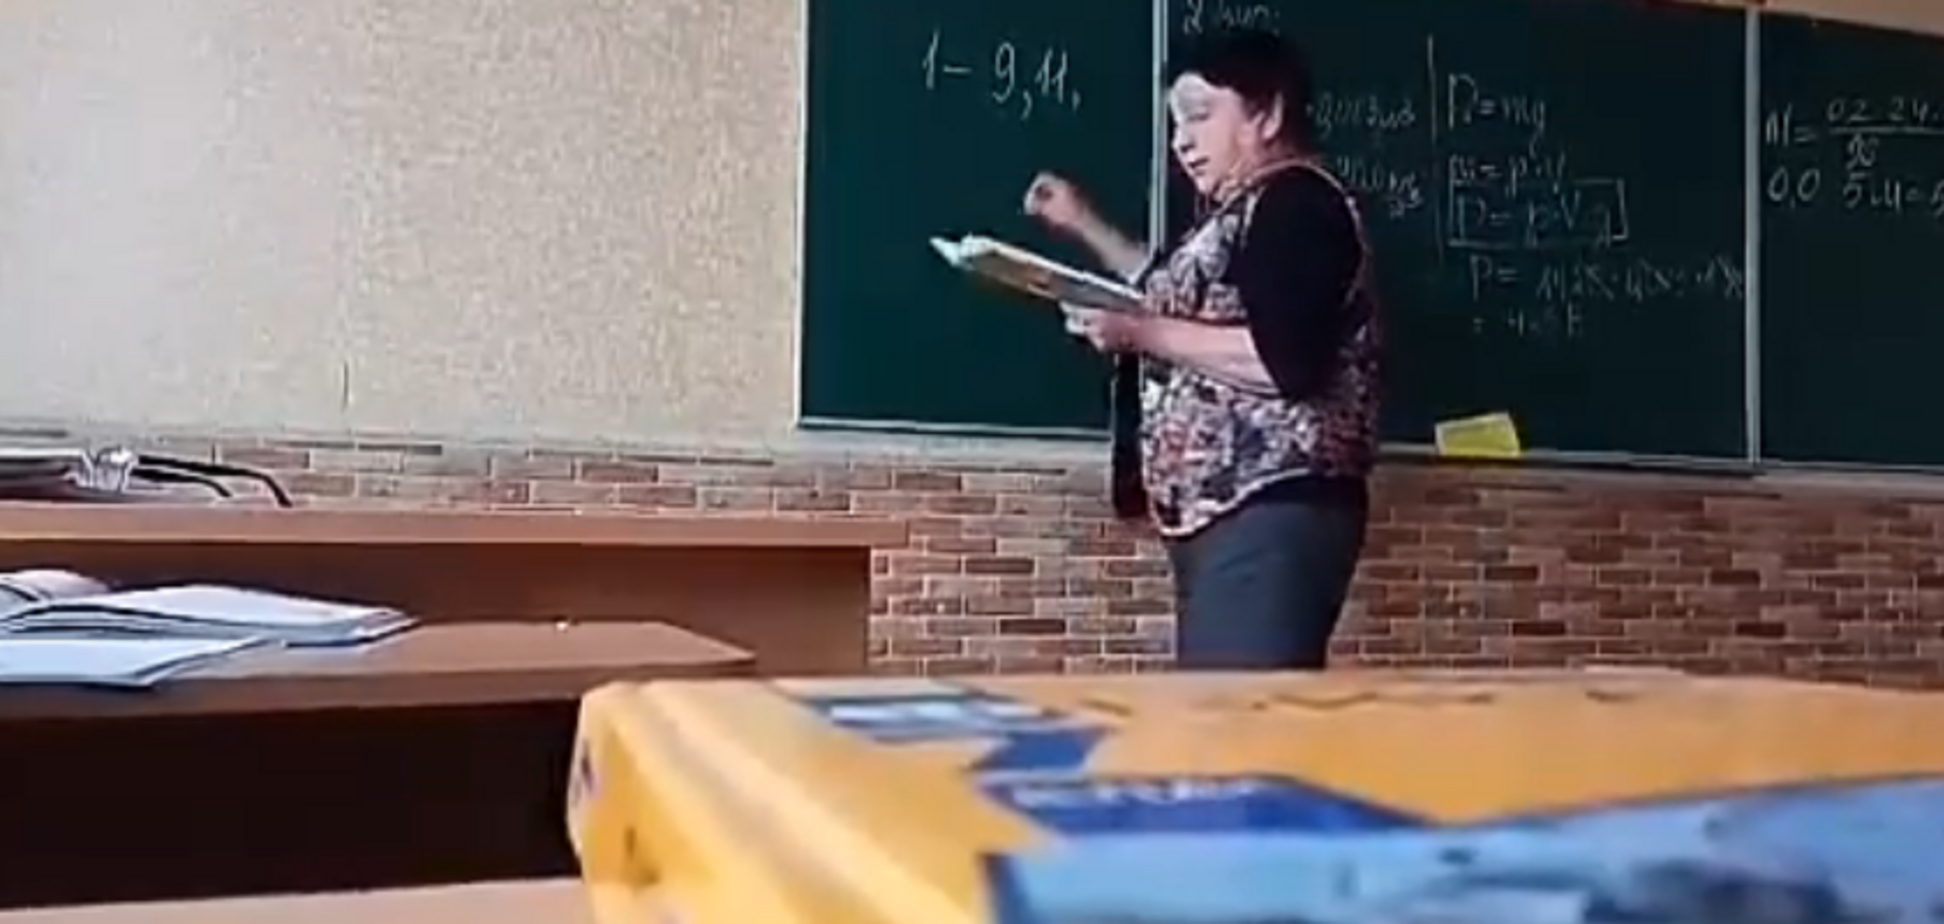 'Ты - с*ка! Г*вно вонючее!' В школе под Киевом разгорелся скандал с учительницей: видео